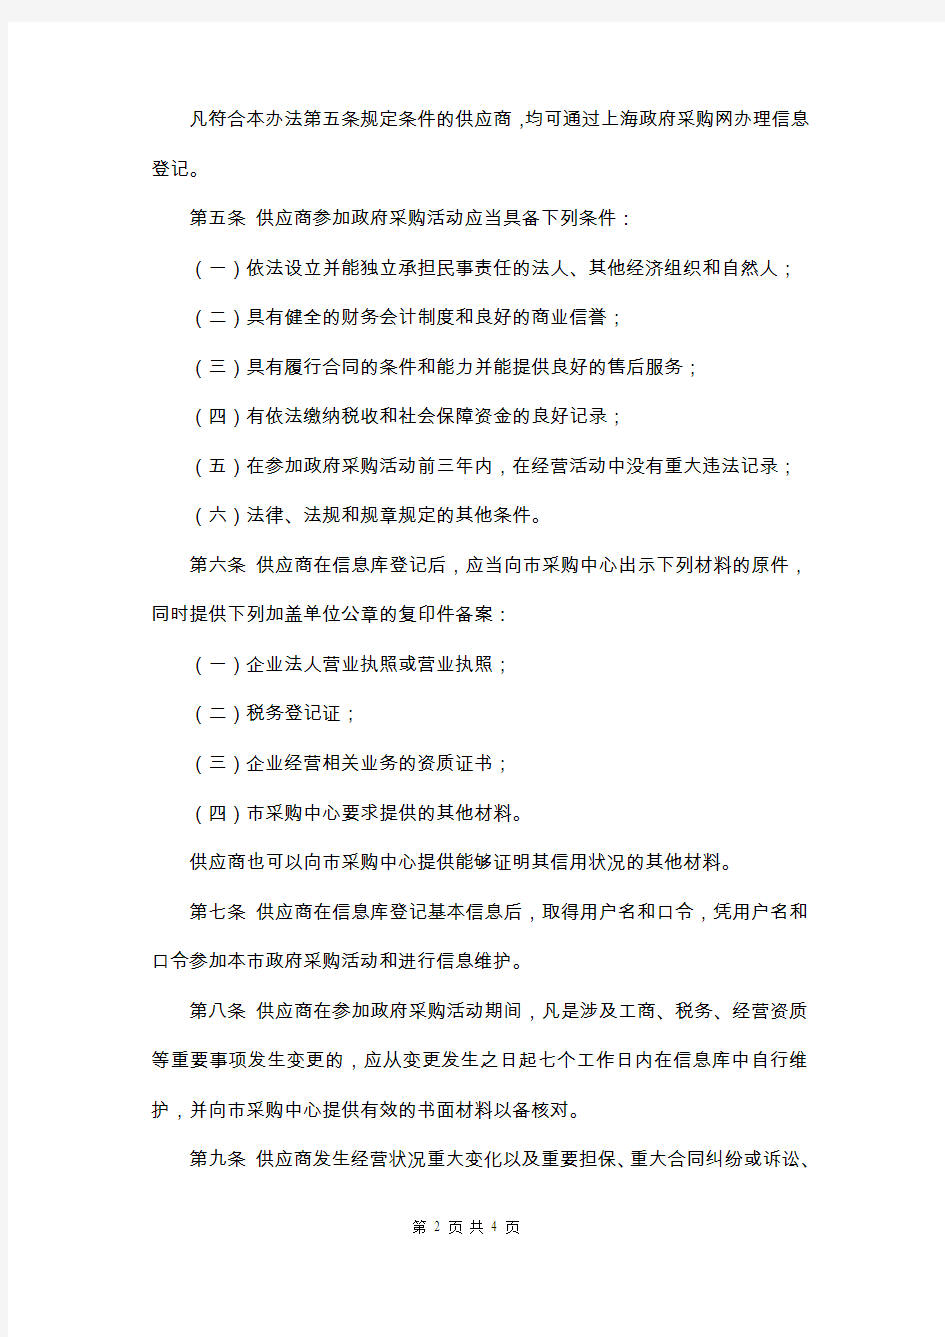 上海市政府采购供应商信息库及诚信档案管理暂行办法